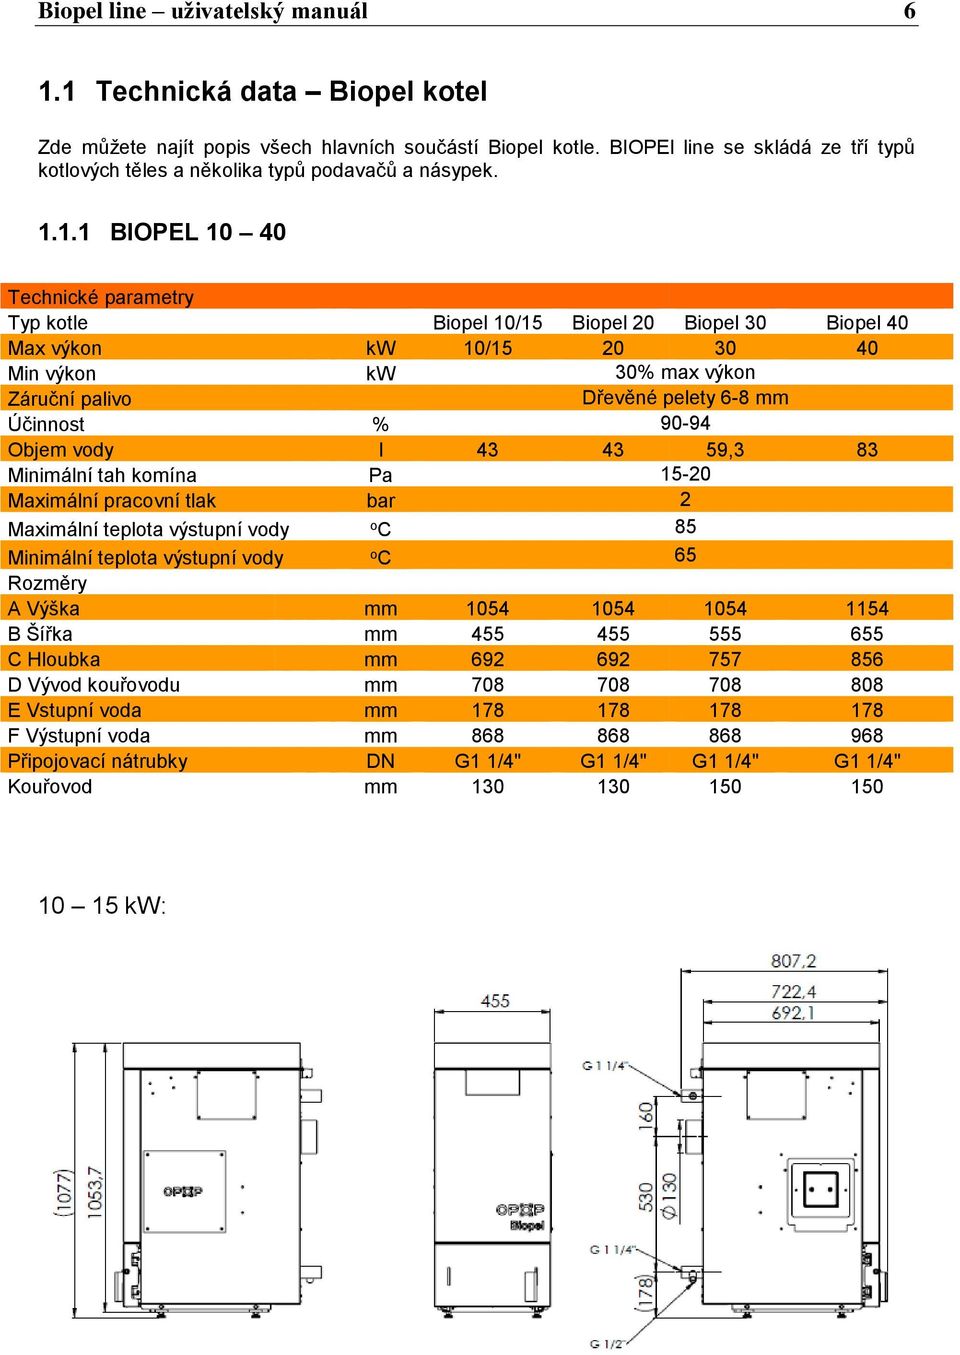 1.1 BIOPEL 10 40 Technické parametry Typ kotle Biopel 10/15 Biopel 20 Biopel 30 Biopel 40 Max výkon kw 10/15 20 30 40 Min výkon kw 30% max výkon Záruční palivo Dřevěné pelety 6-8 mm Účinnost % 90-94